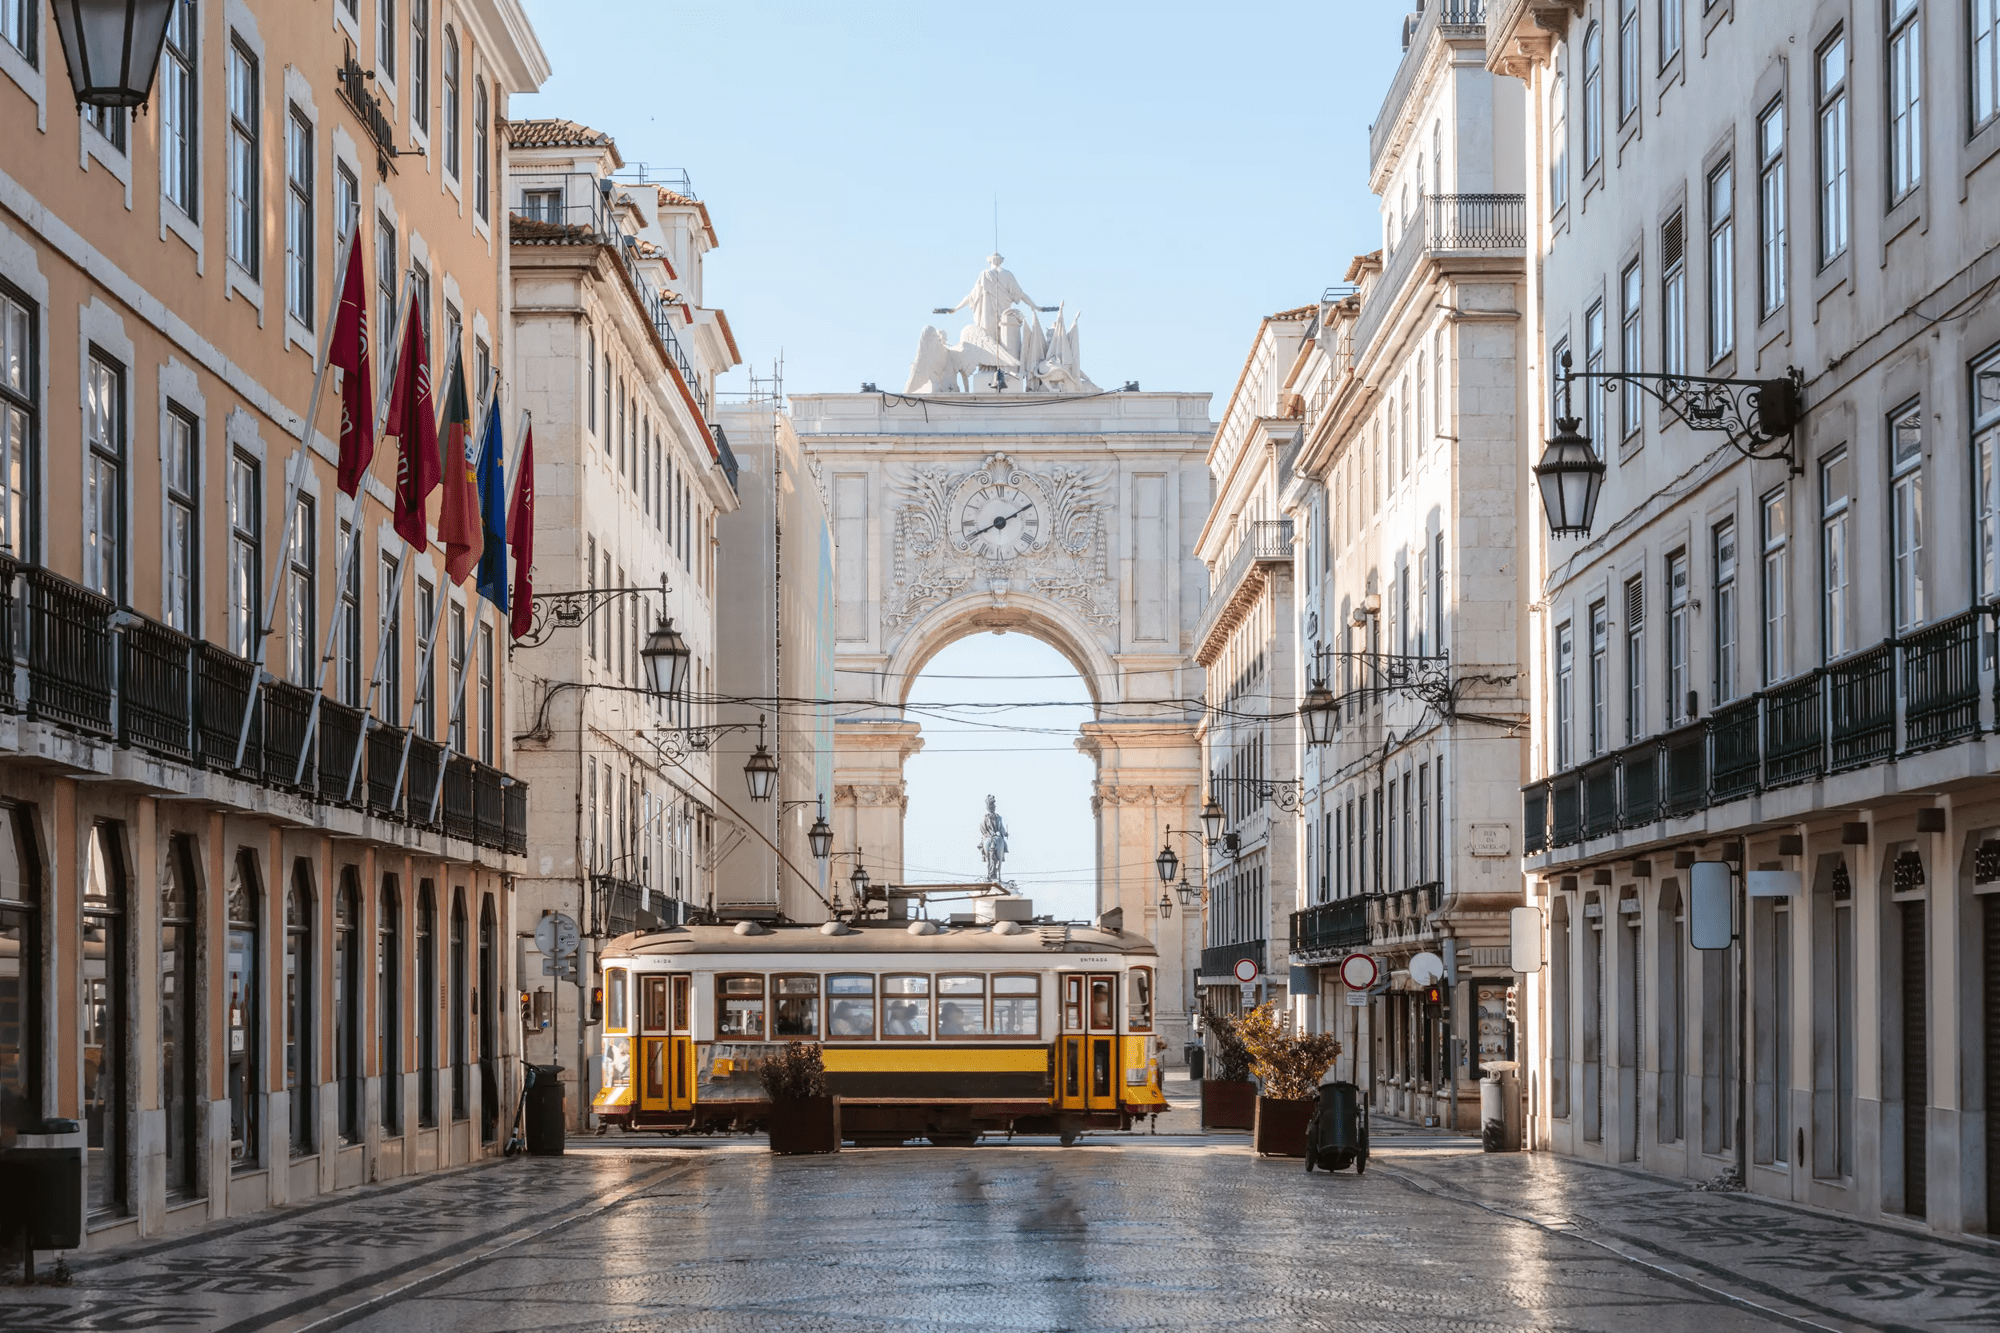 4-daagse stedentrip Lissabon - Lissabon